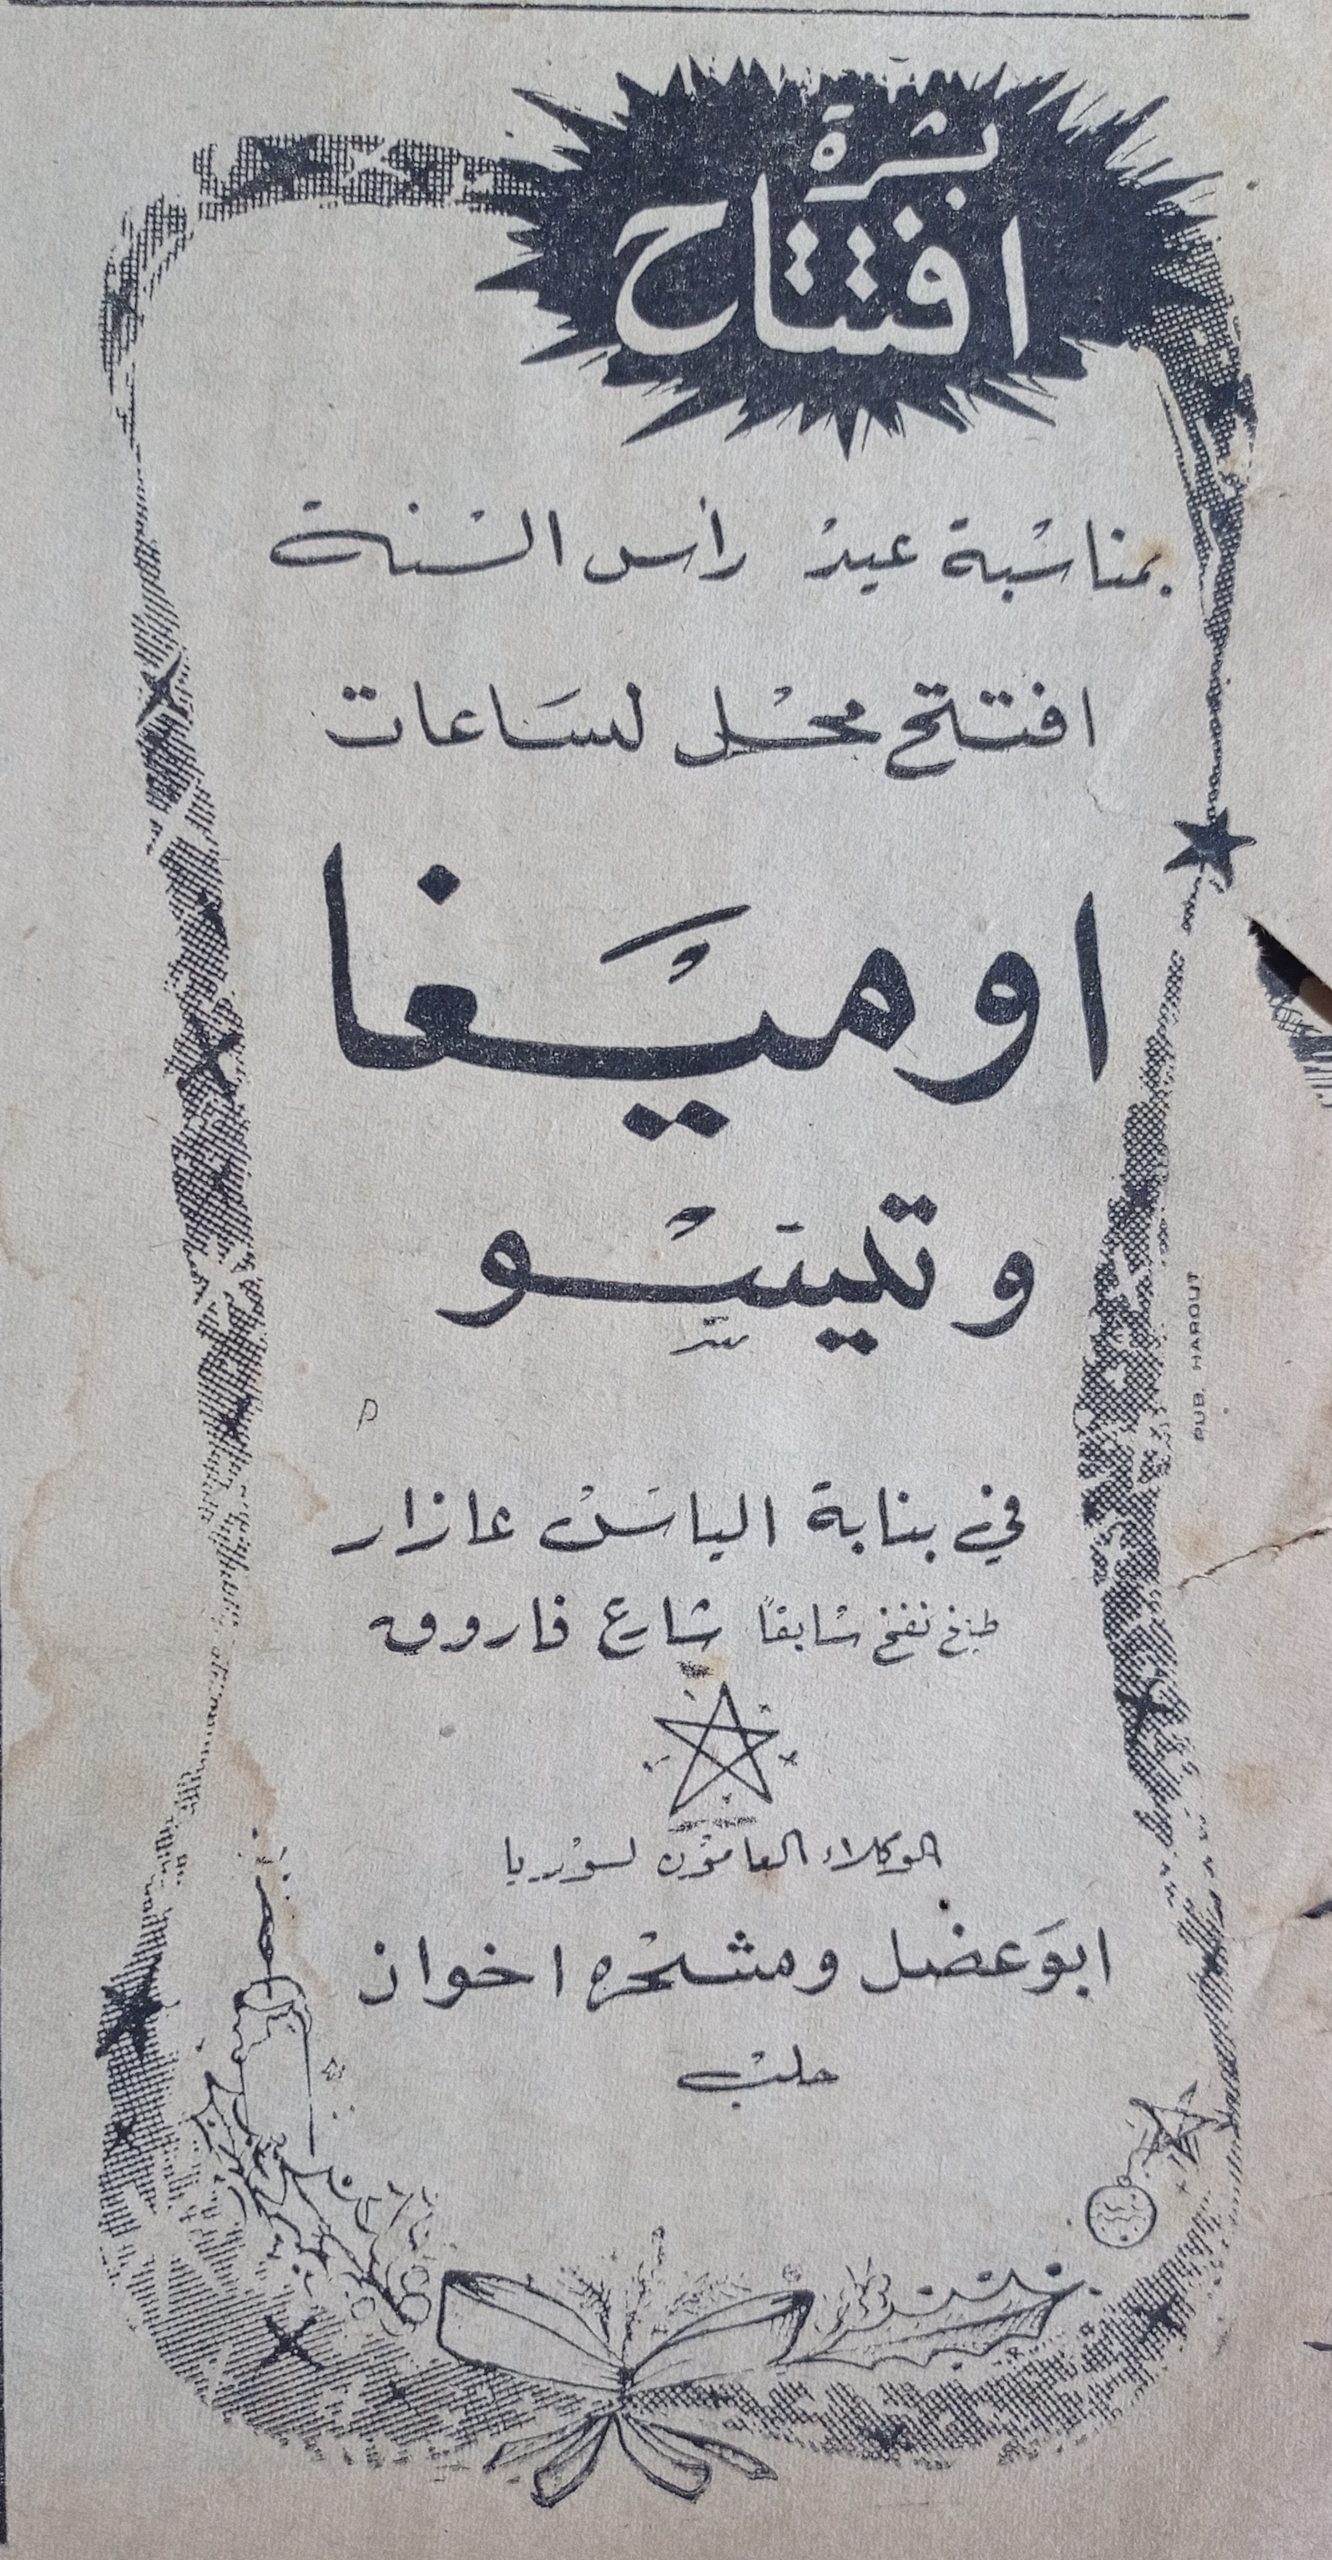 التاريخ السوري المعاصر - إعلان افتتاح محل ساعات اوميغا و تيسو في حلب عام 1956